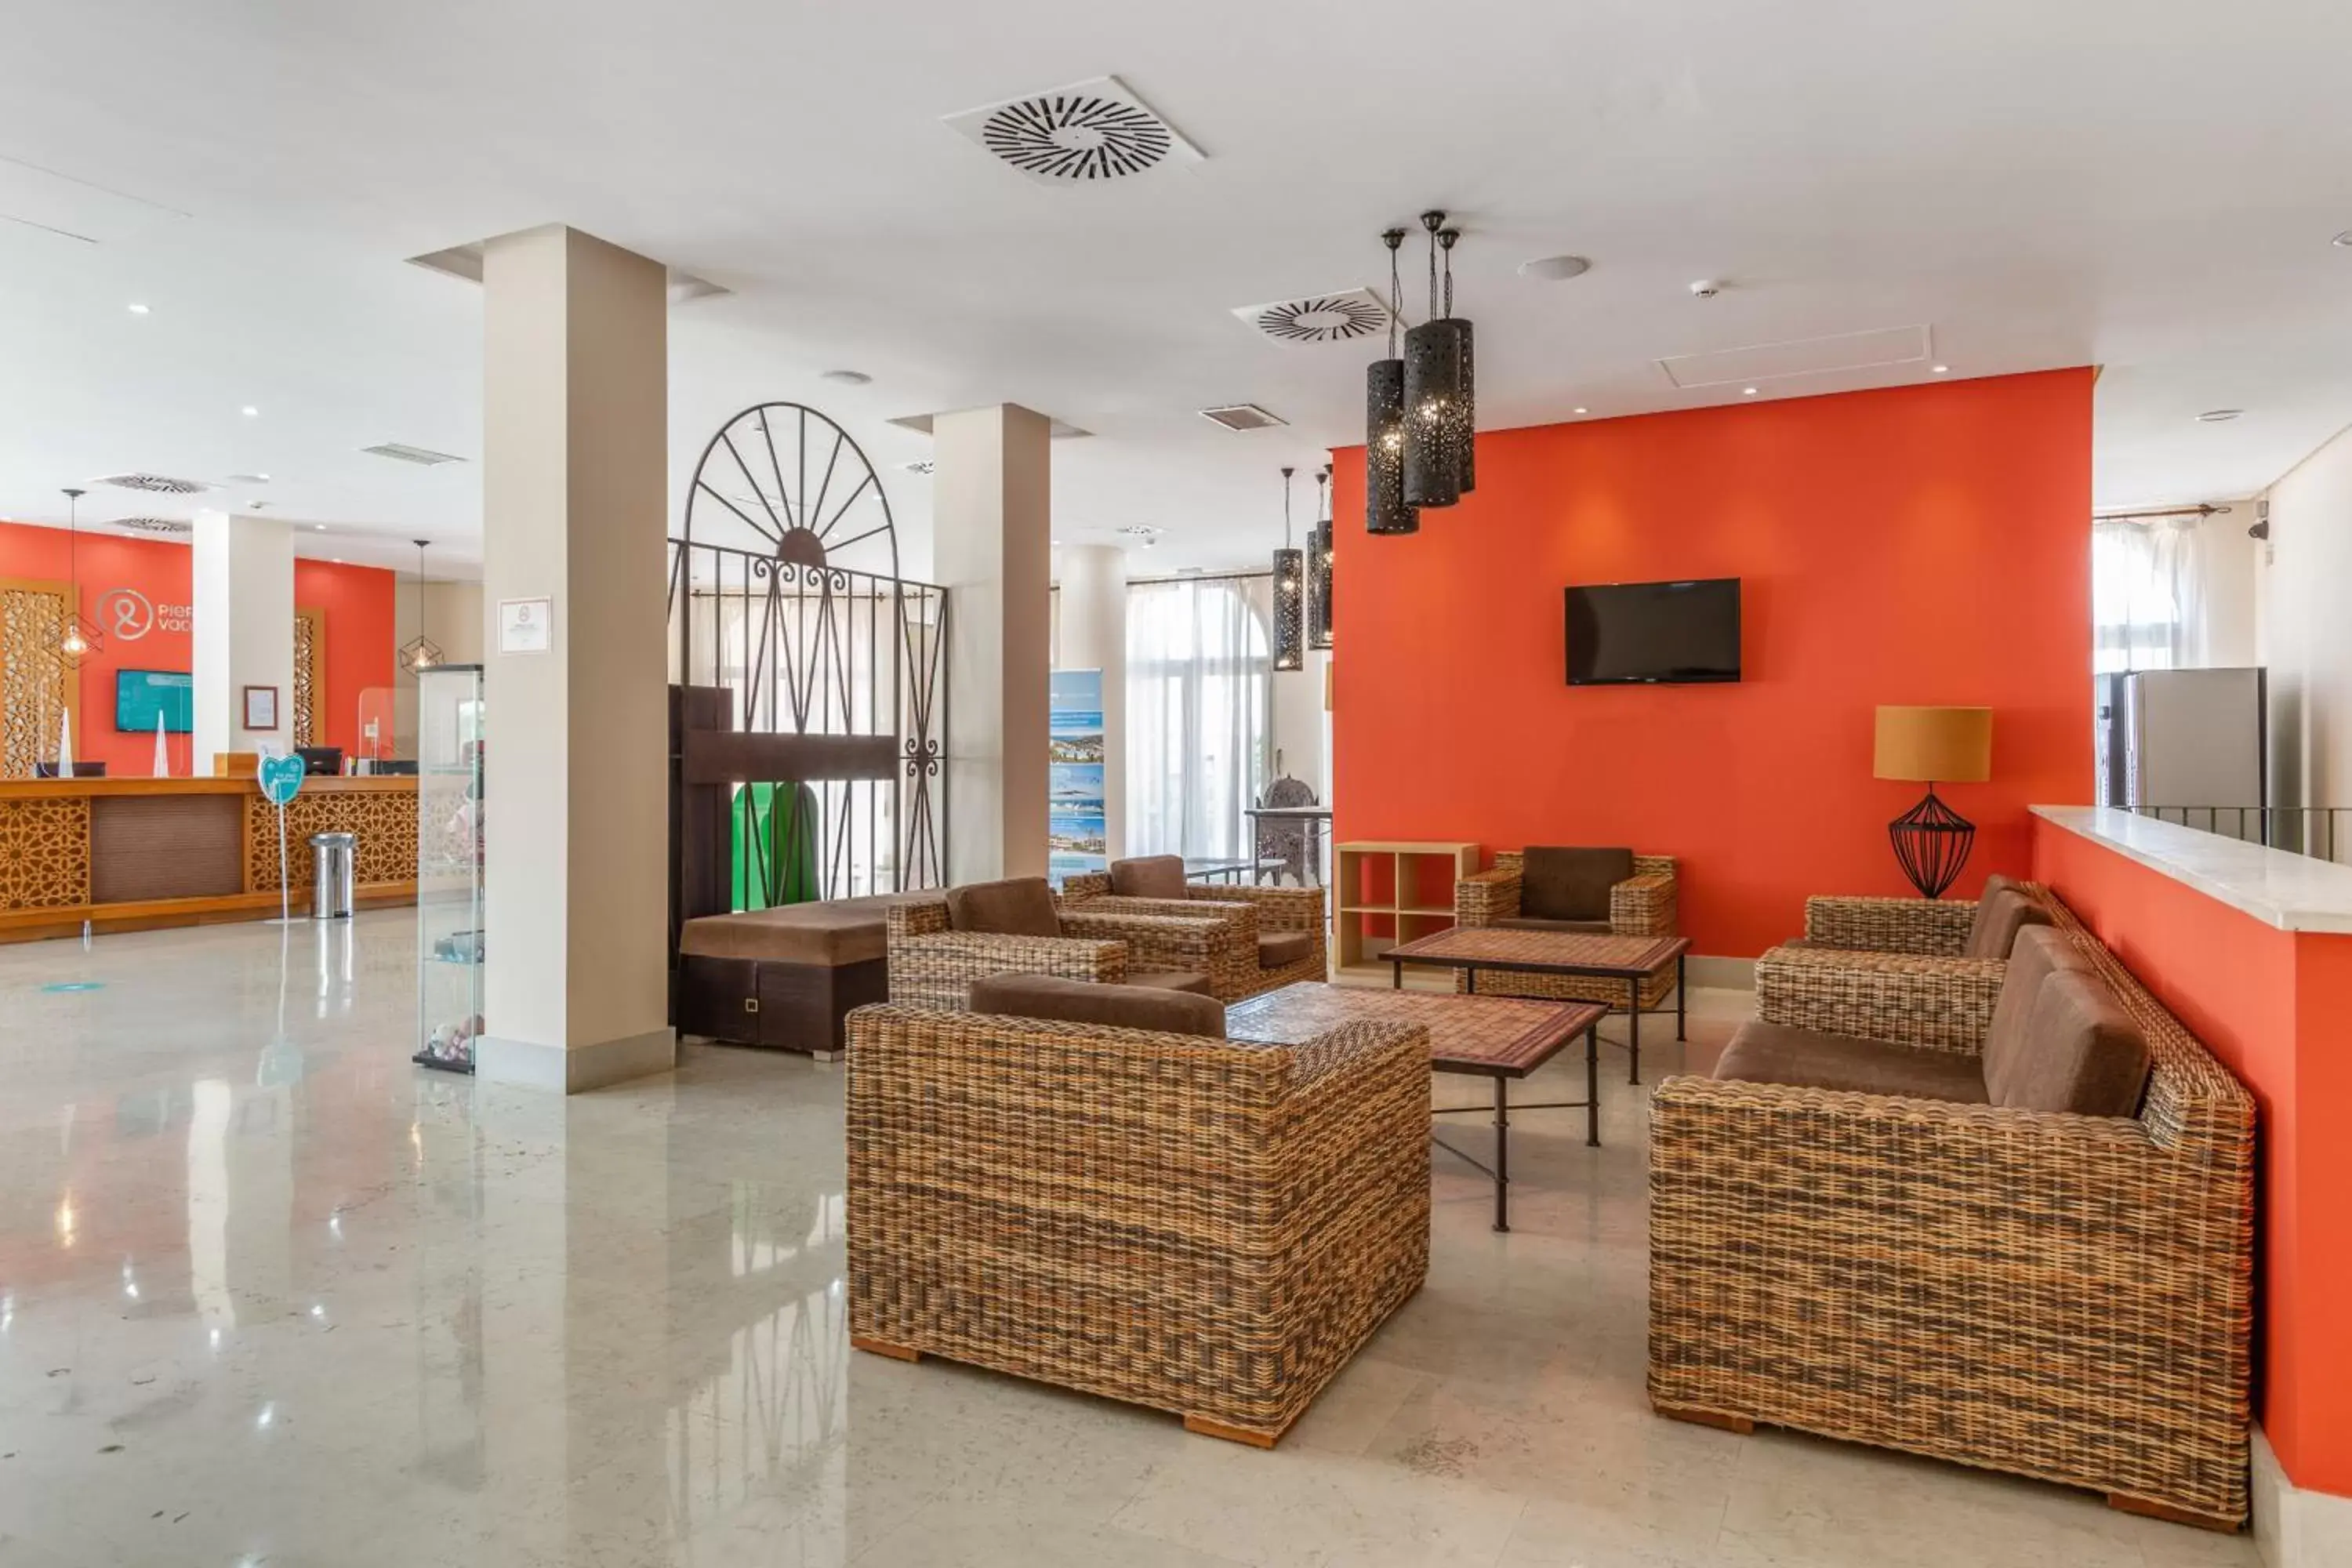 Lobby or reception in Pierre & Vacances Resort Terrazas Costa del Sol